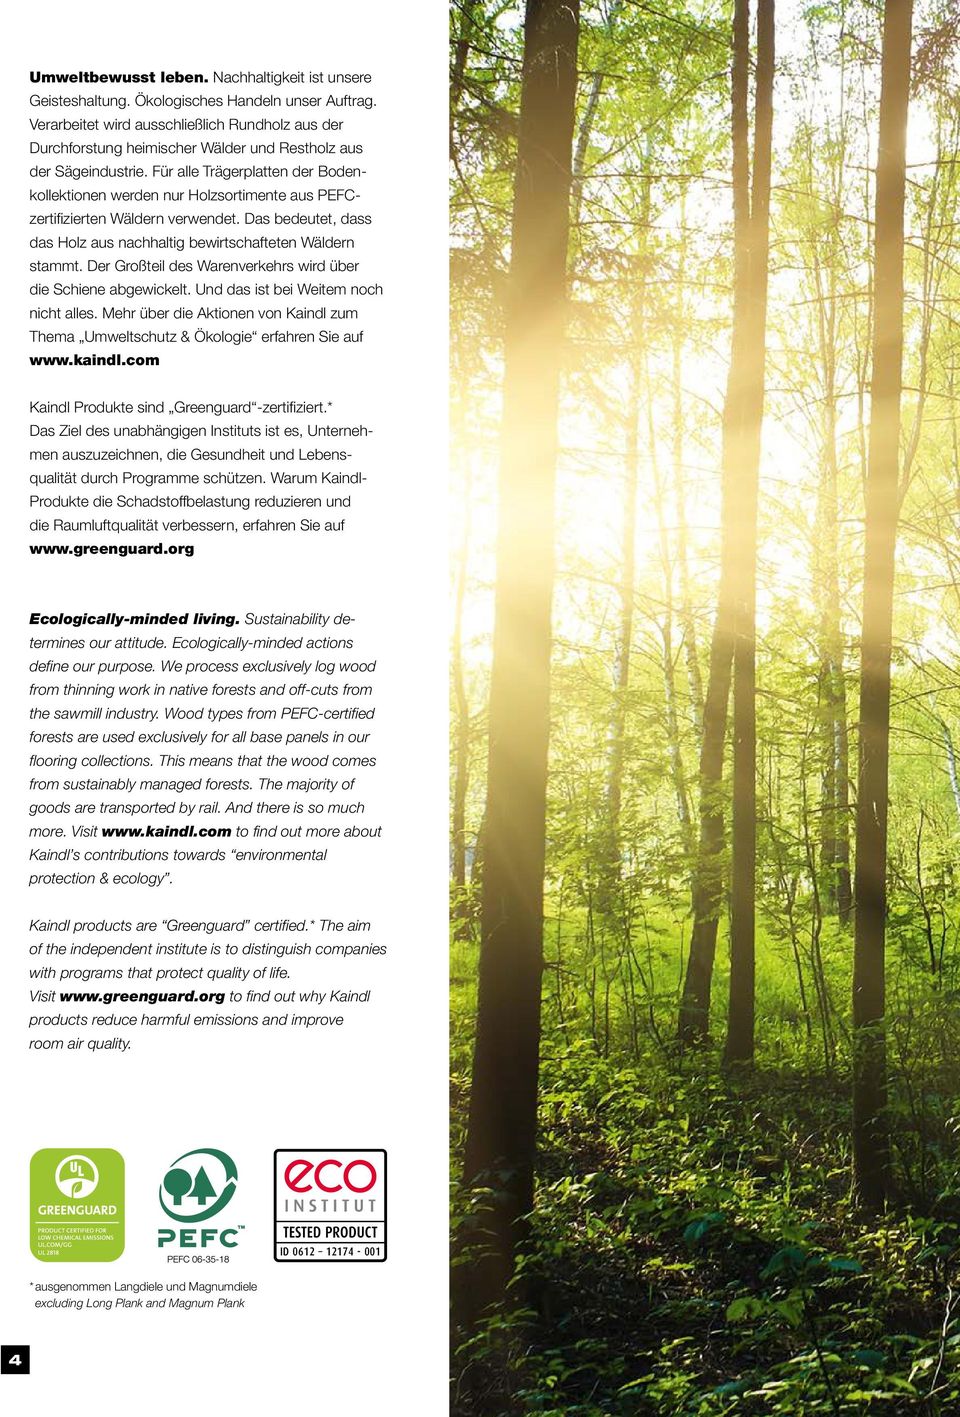 Für alle Trägerplatten der Bodenkollektionen werden nur Holzsortimente aus PEFCzertifizierten Wäldern verwendet. Das bedeutet, dass das Holz aus nachhaltig bewirtschafteten Wäldern stammt.